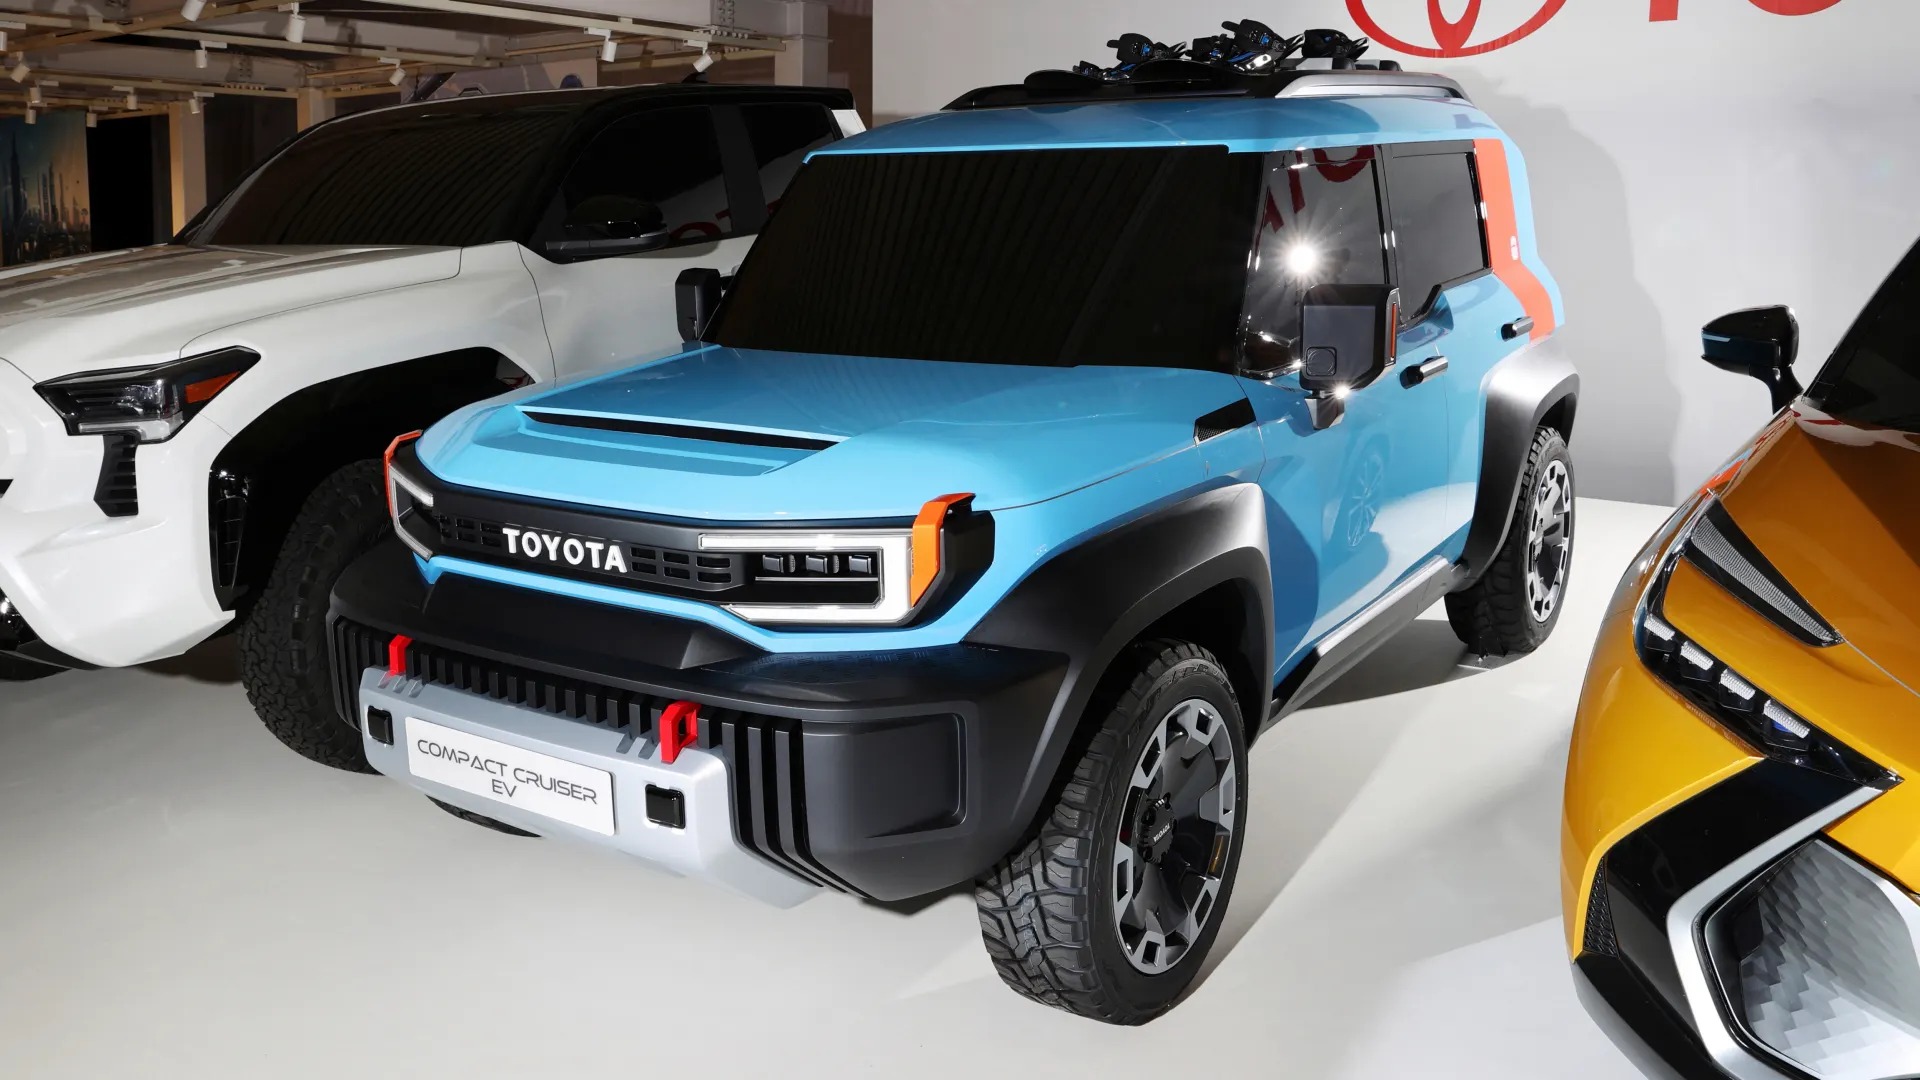 Tổng hợp những tin đồn về Toyota Land Cruiser mini - Ảnh 1.